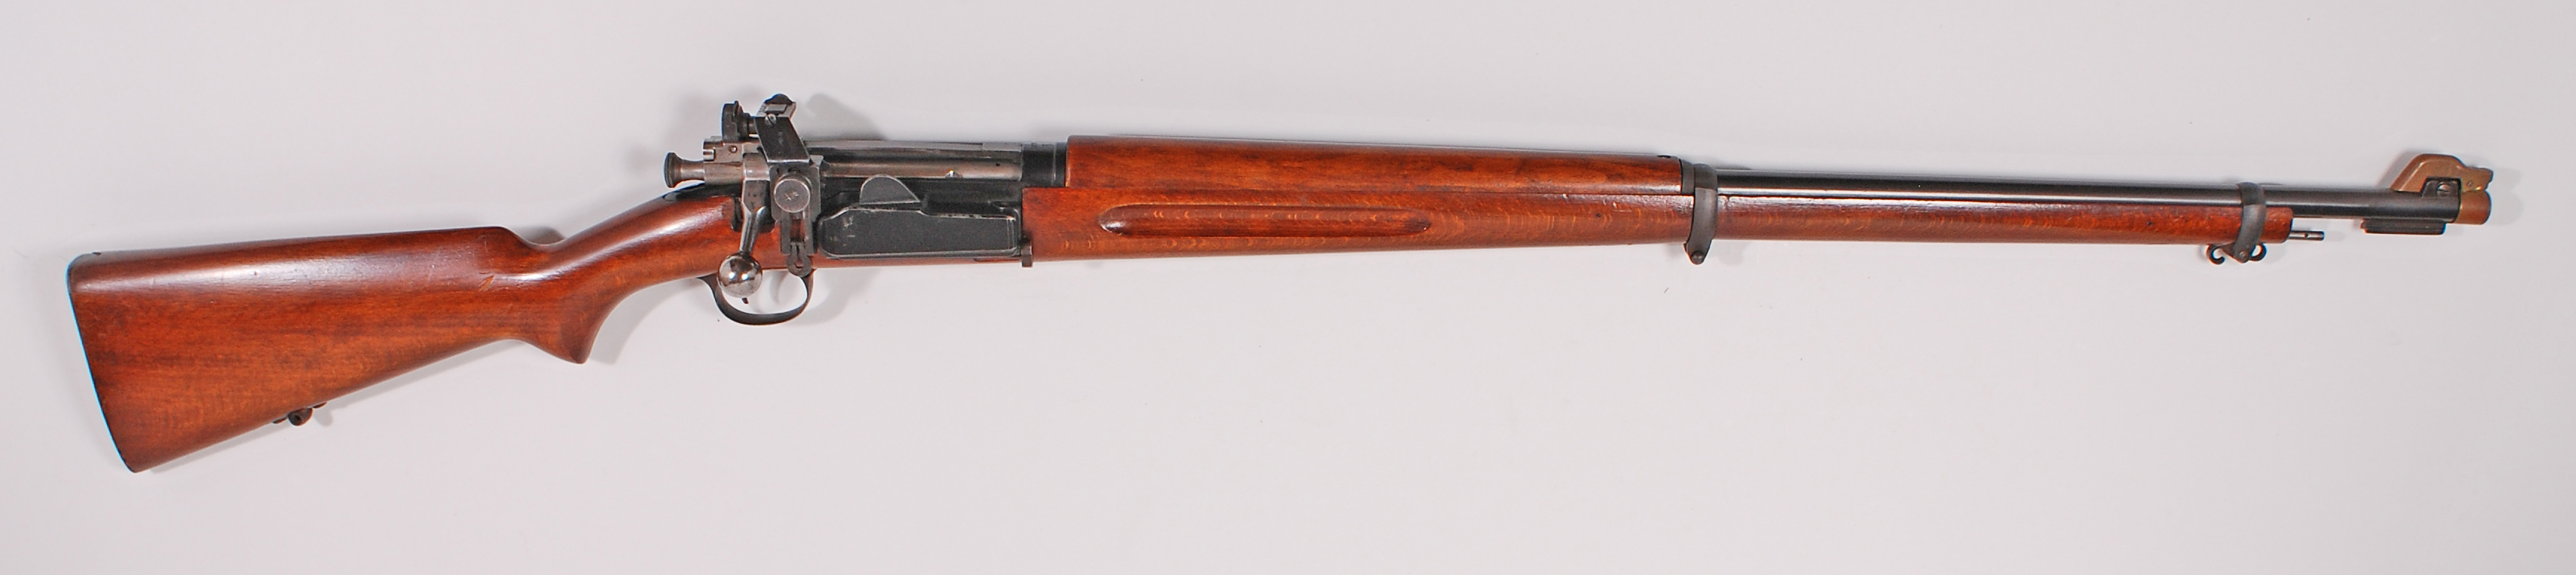 ./guns/rifle/bilder/Rifle-Kongsberg-Krag-M1894-1936 privat-39281-1.jpg